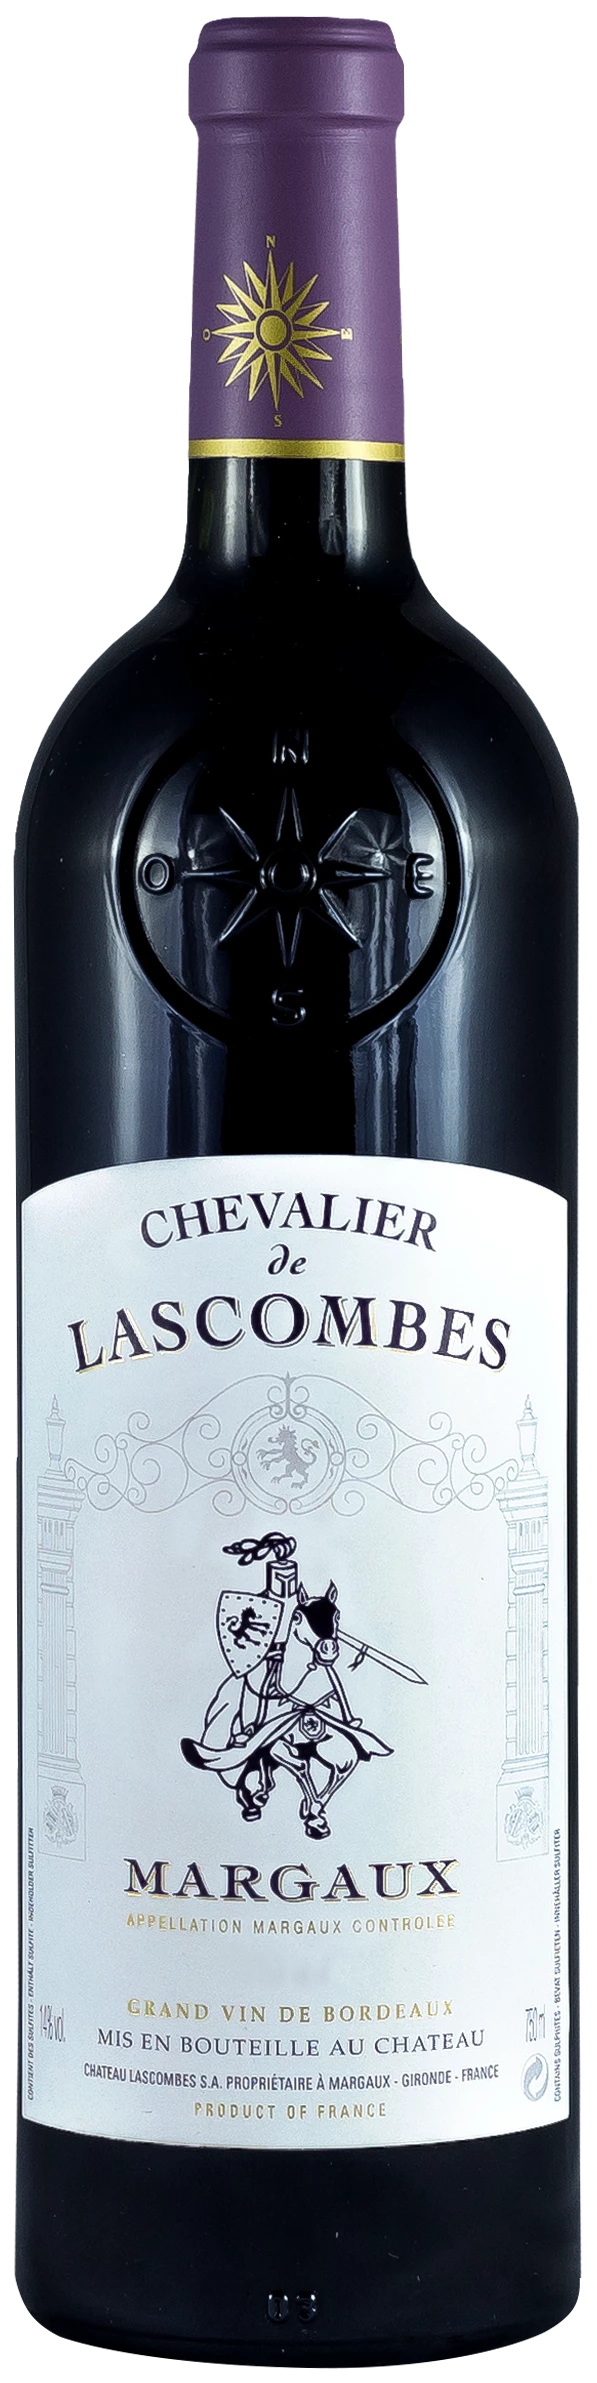 Grand Vin de Bordeaux Margaux 13% 75cl - CHEVALIER DE LASCOMBES